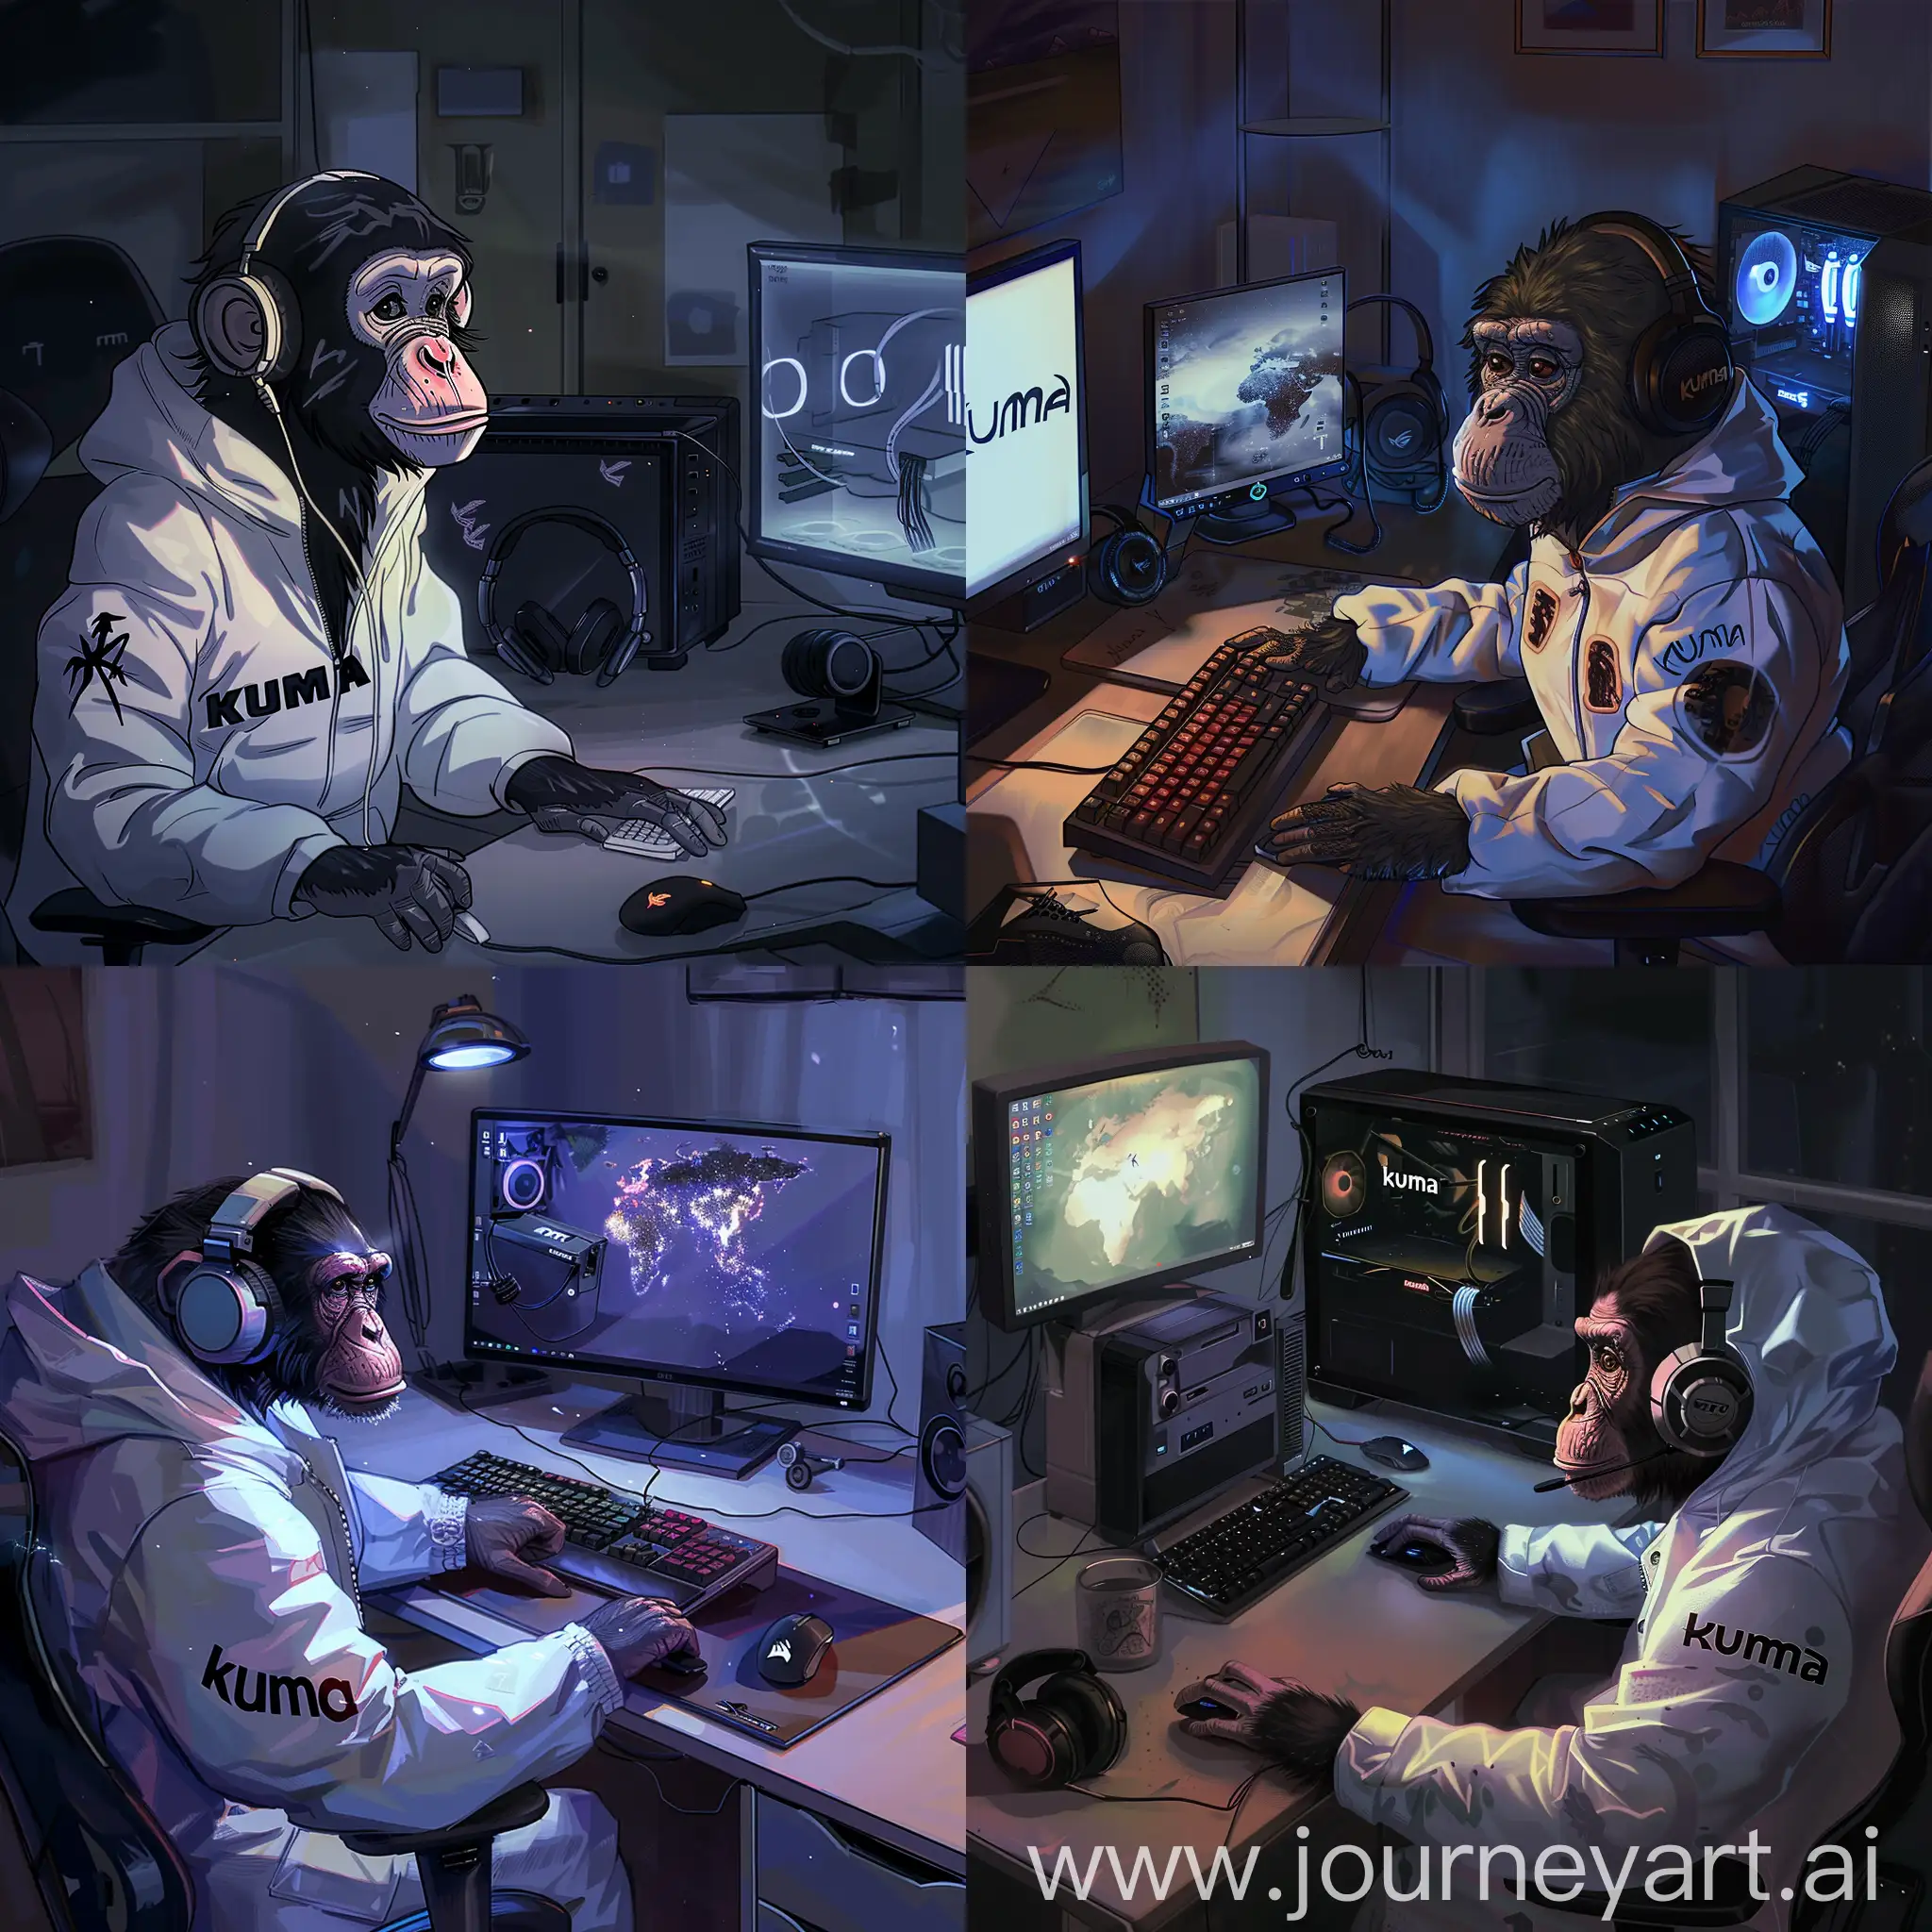 Intelligent-Monkey-in-Kuma-Jacket-at-Gaming-Setup